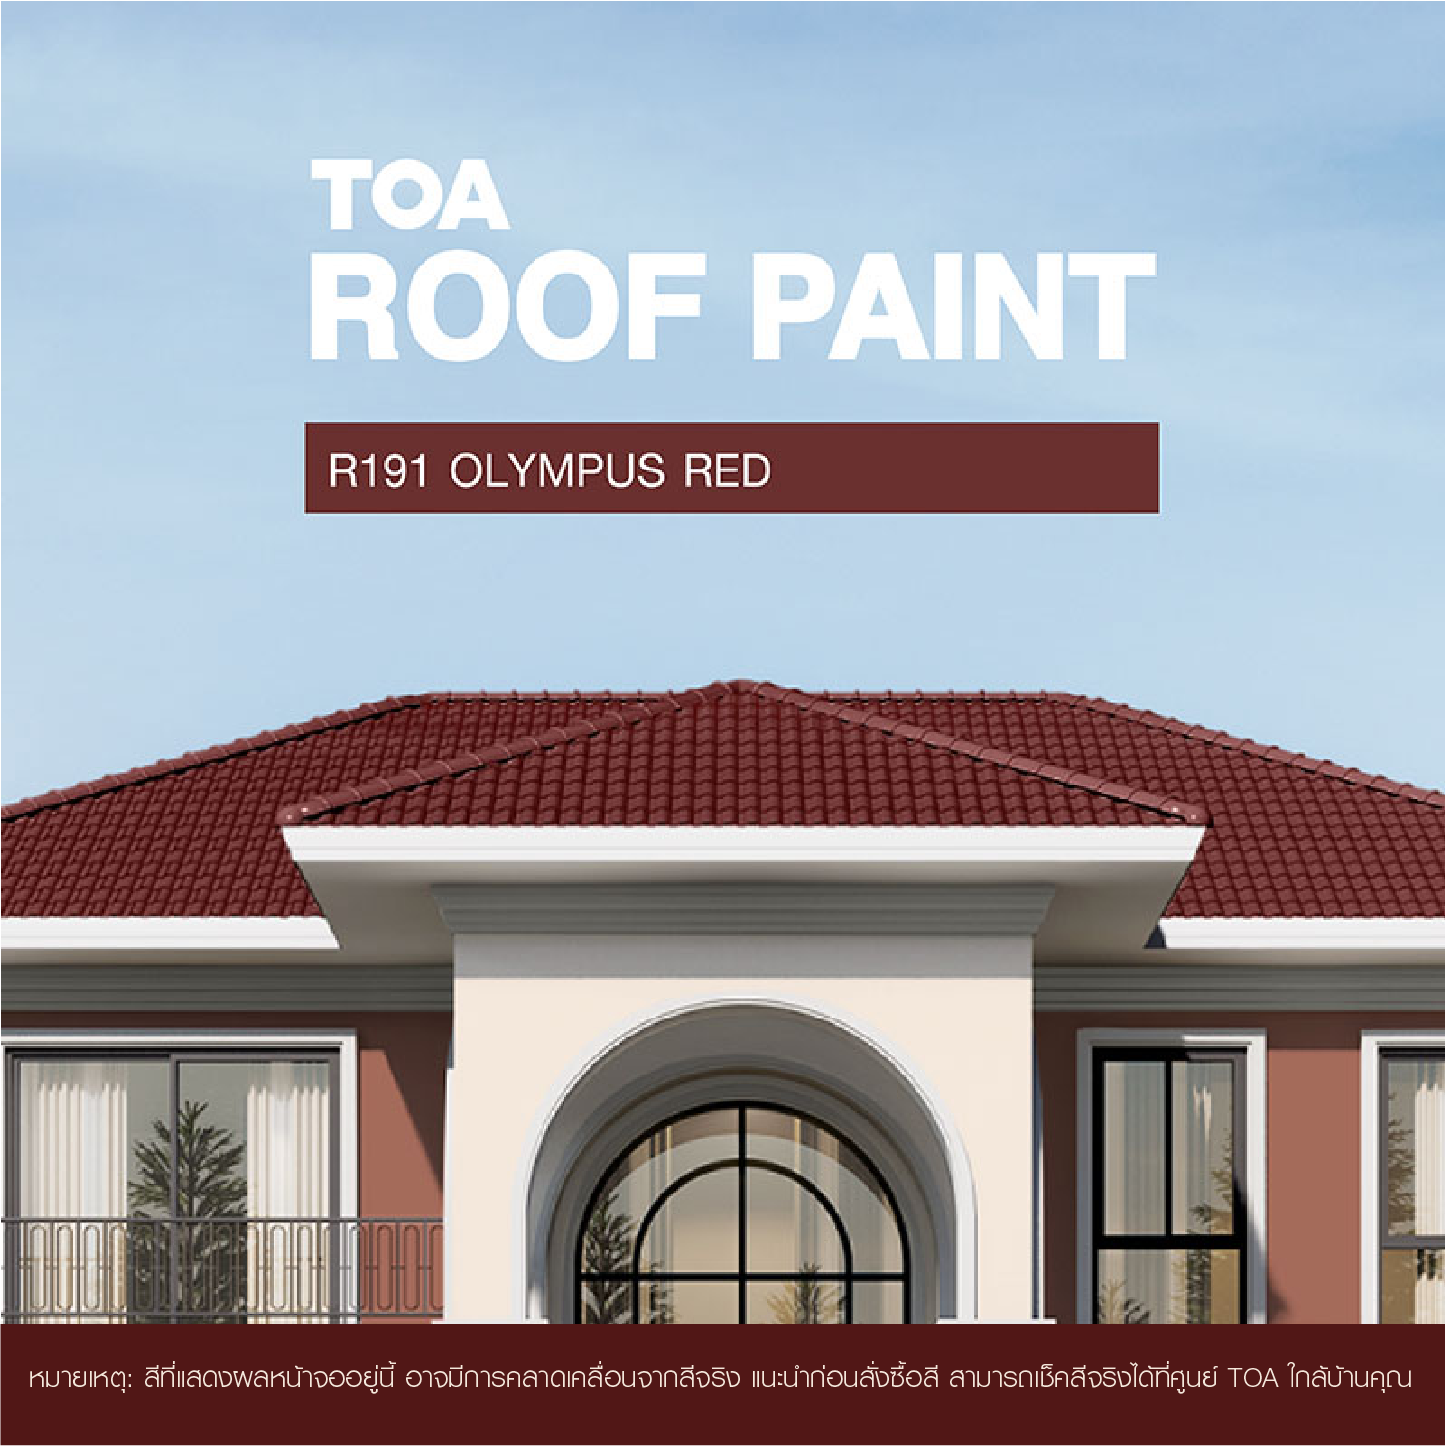 ถ้าคุณ กำลัง มองหา หลังคาบ้าน สีไหนสวย ขอแนะนำ บ้าน หลังคา สี แดง โอลิมปัส ทีโอเอ รูฟ เพ้นท์ R191 (Olympus Red)